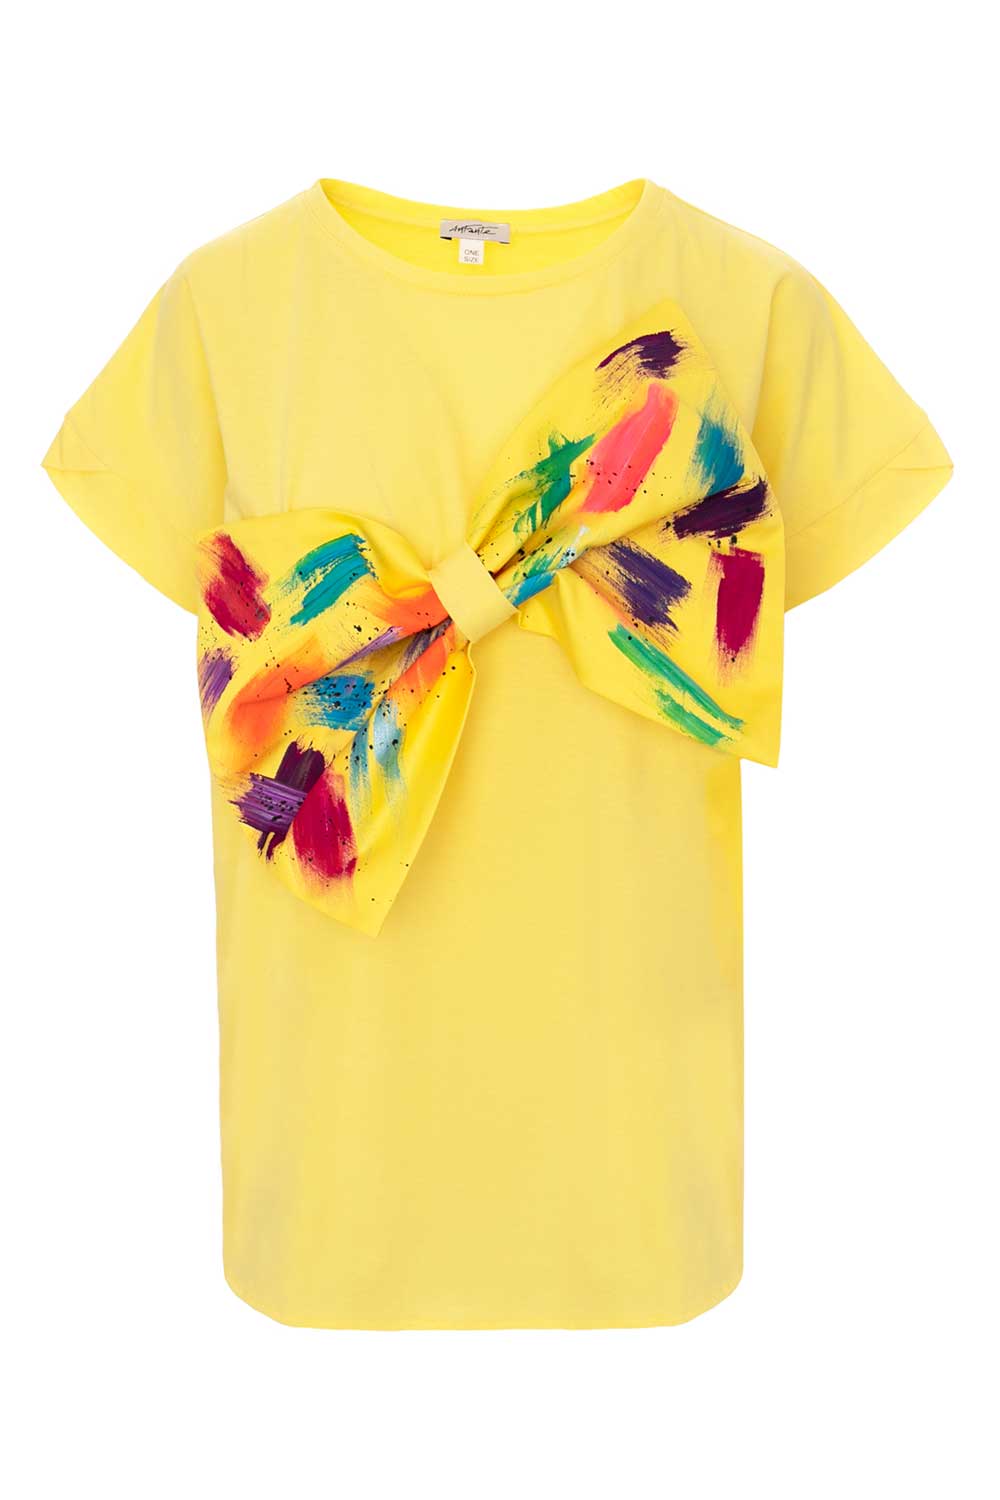 tricou-galben-funda-supradimensionata-pictata-manual-yellow-1